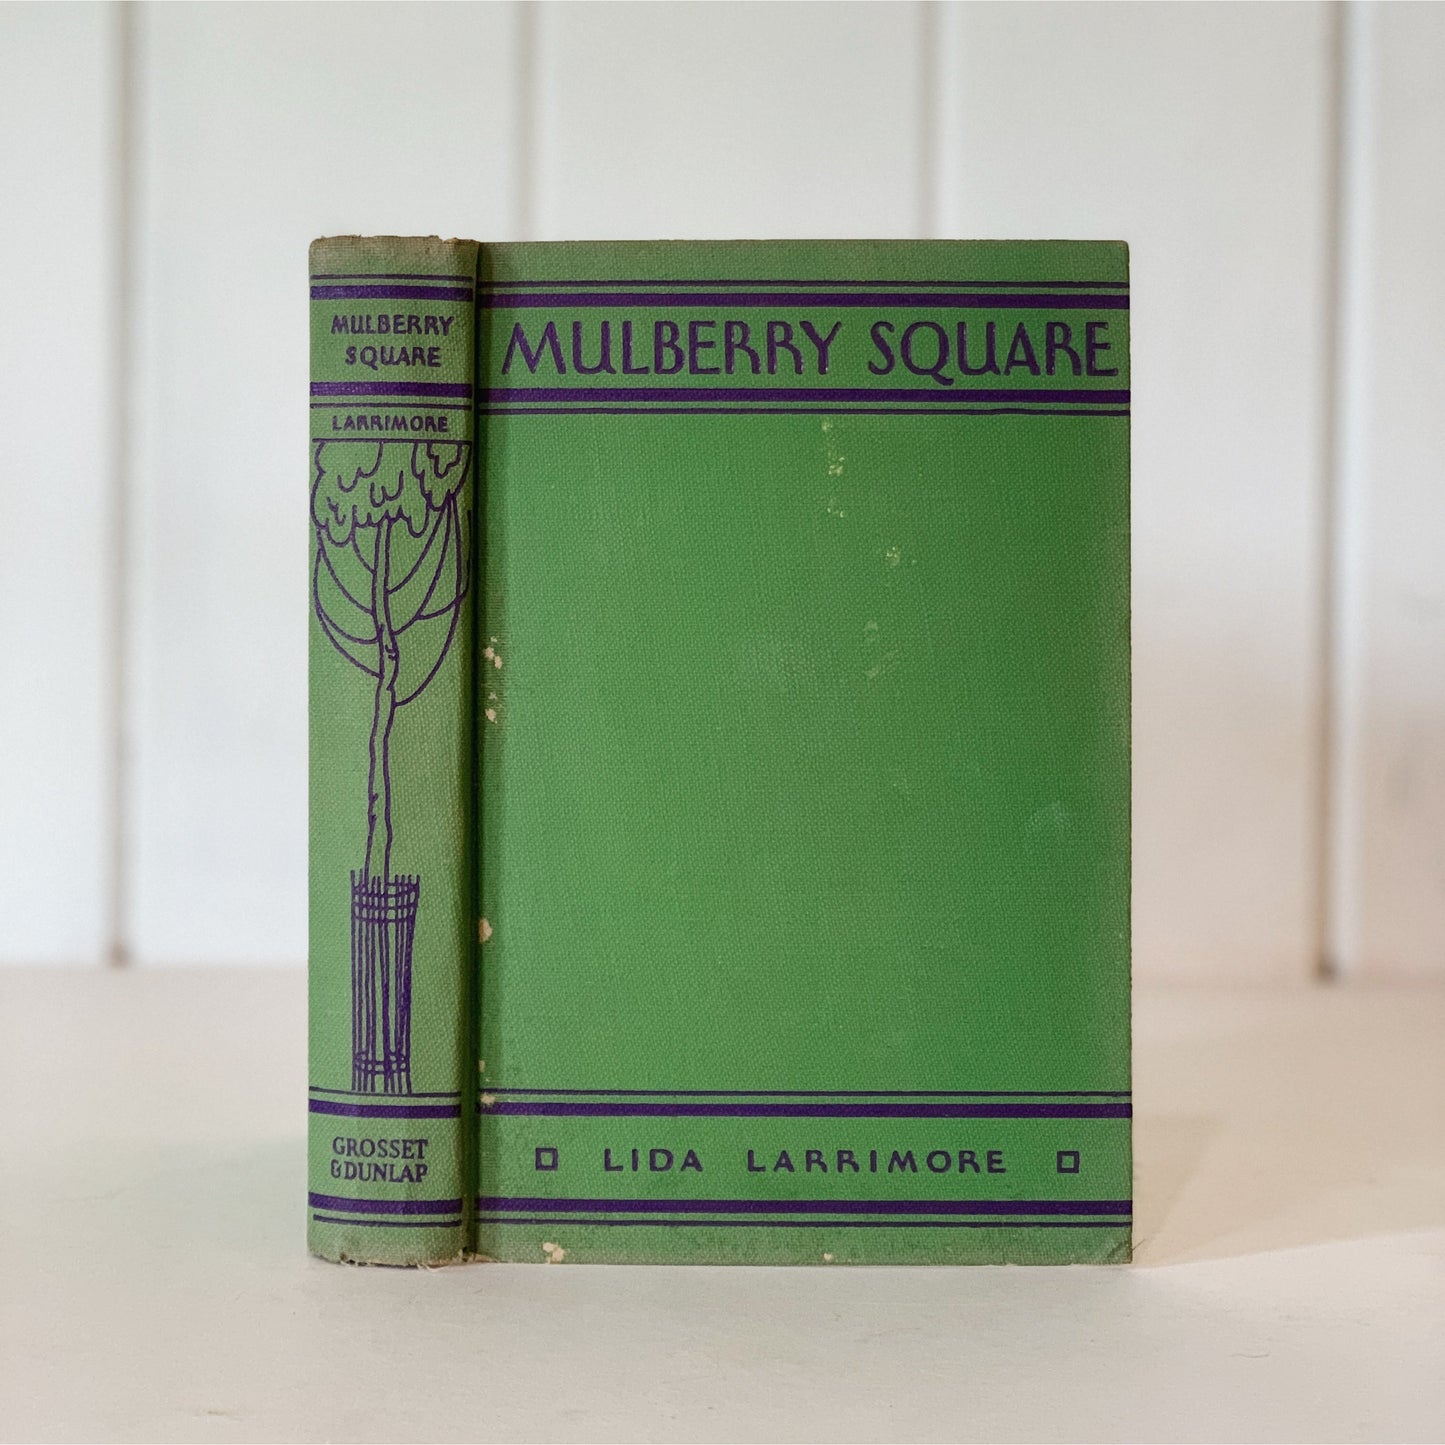 Mulberry Square - Lida Larrimore - Antique Romance Hardcover